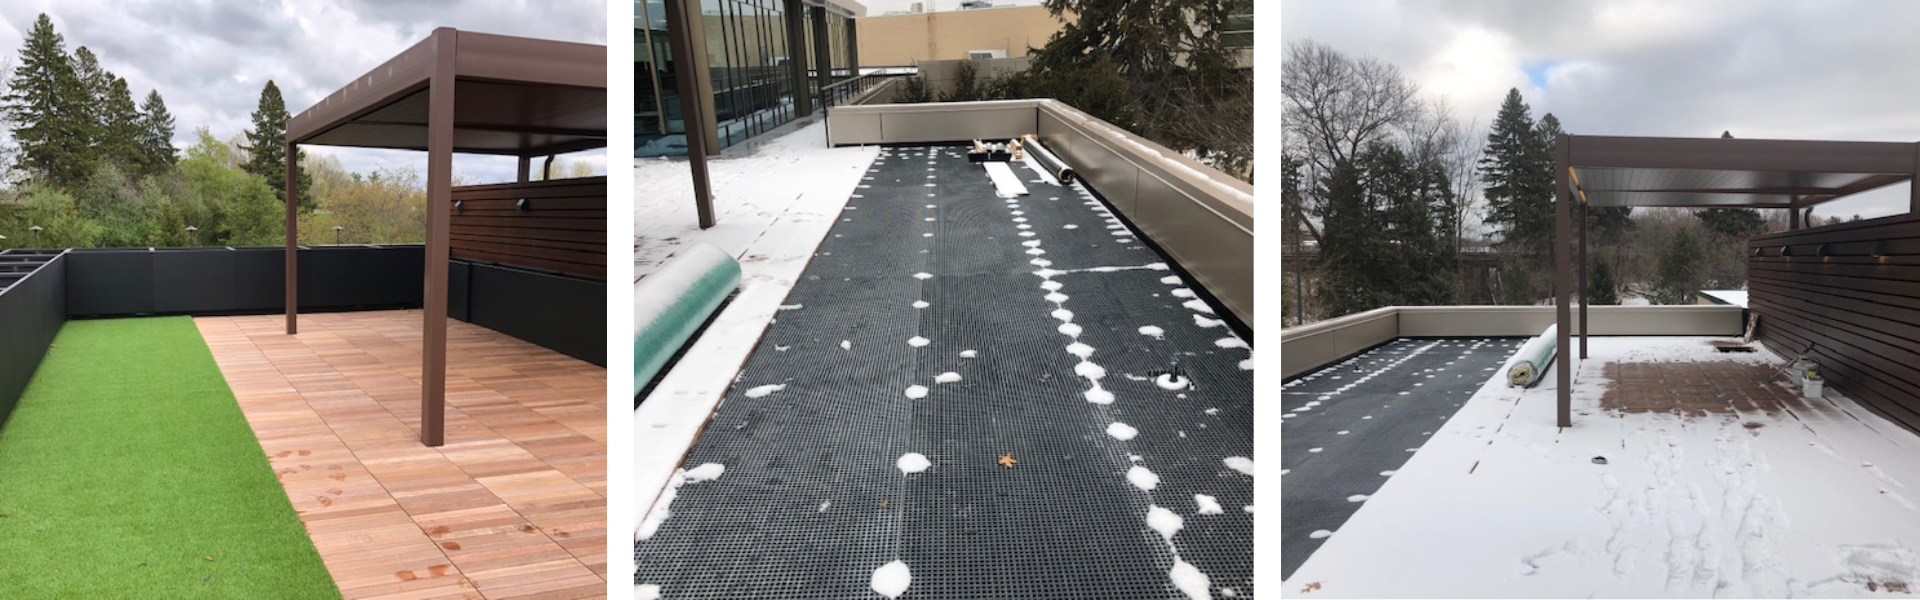 fiberglass grating, grating pedestals, office rooftop deck